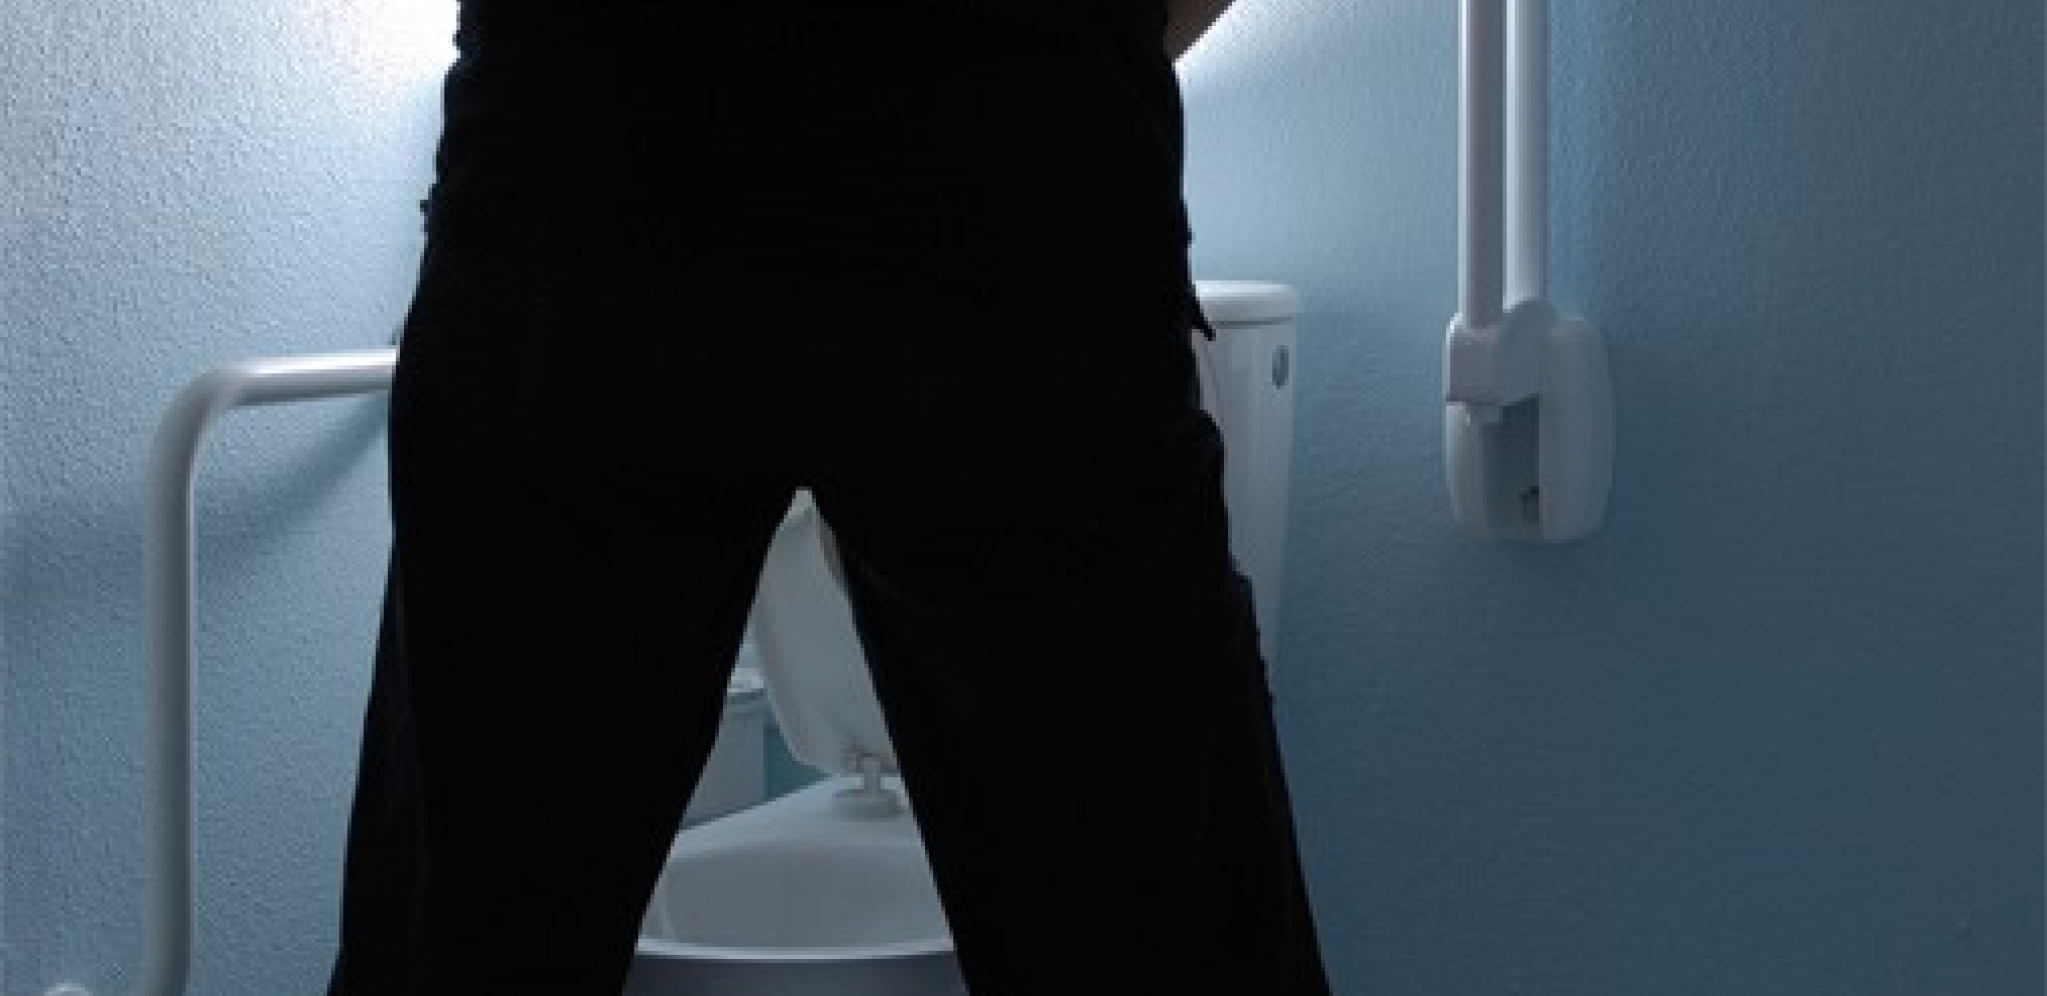 Muškarci s uvećanom prostatom non-stop tragaju za toaletom